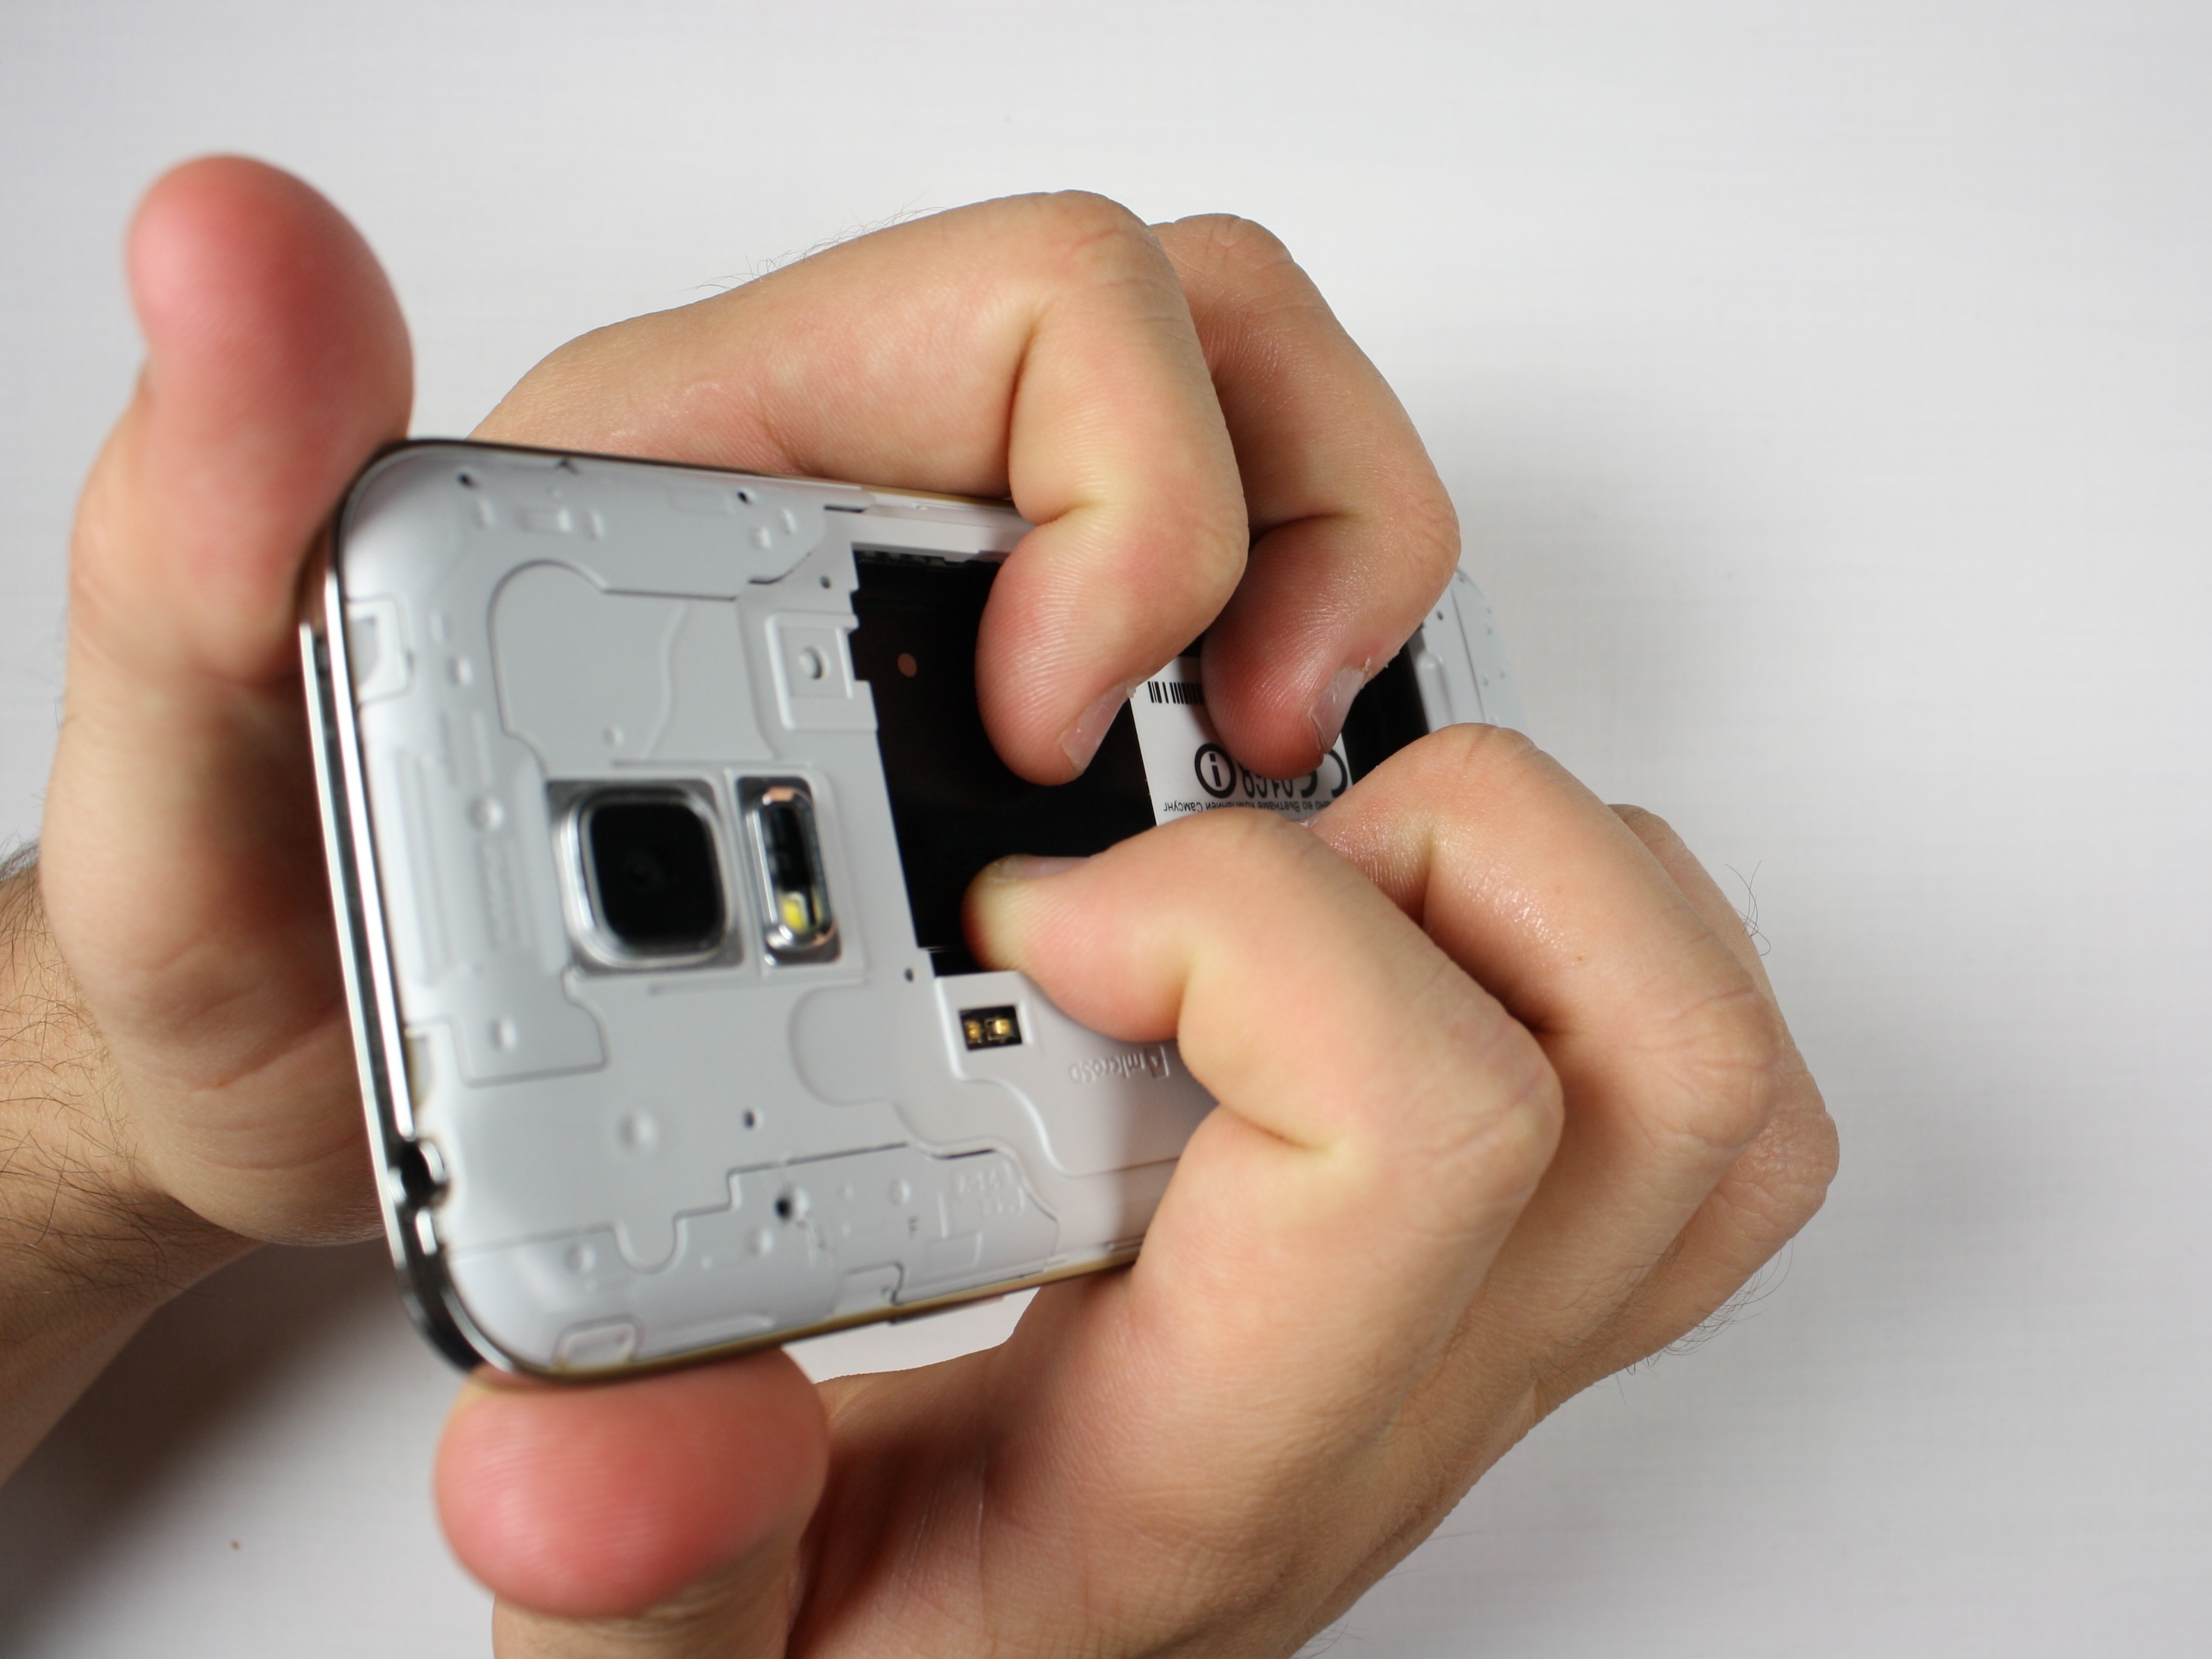 گلکسی اس 5 مینی تعمیری را مثل عکس اول در دستتان بگیرید. دقت کنید که انگشت اشاره و میانی دو دست شما باید در جایی از بدنه گوشی قرار بگیرند که باتری روی آن سوار می‌شود.